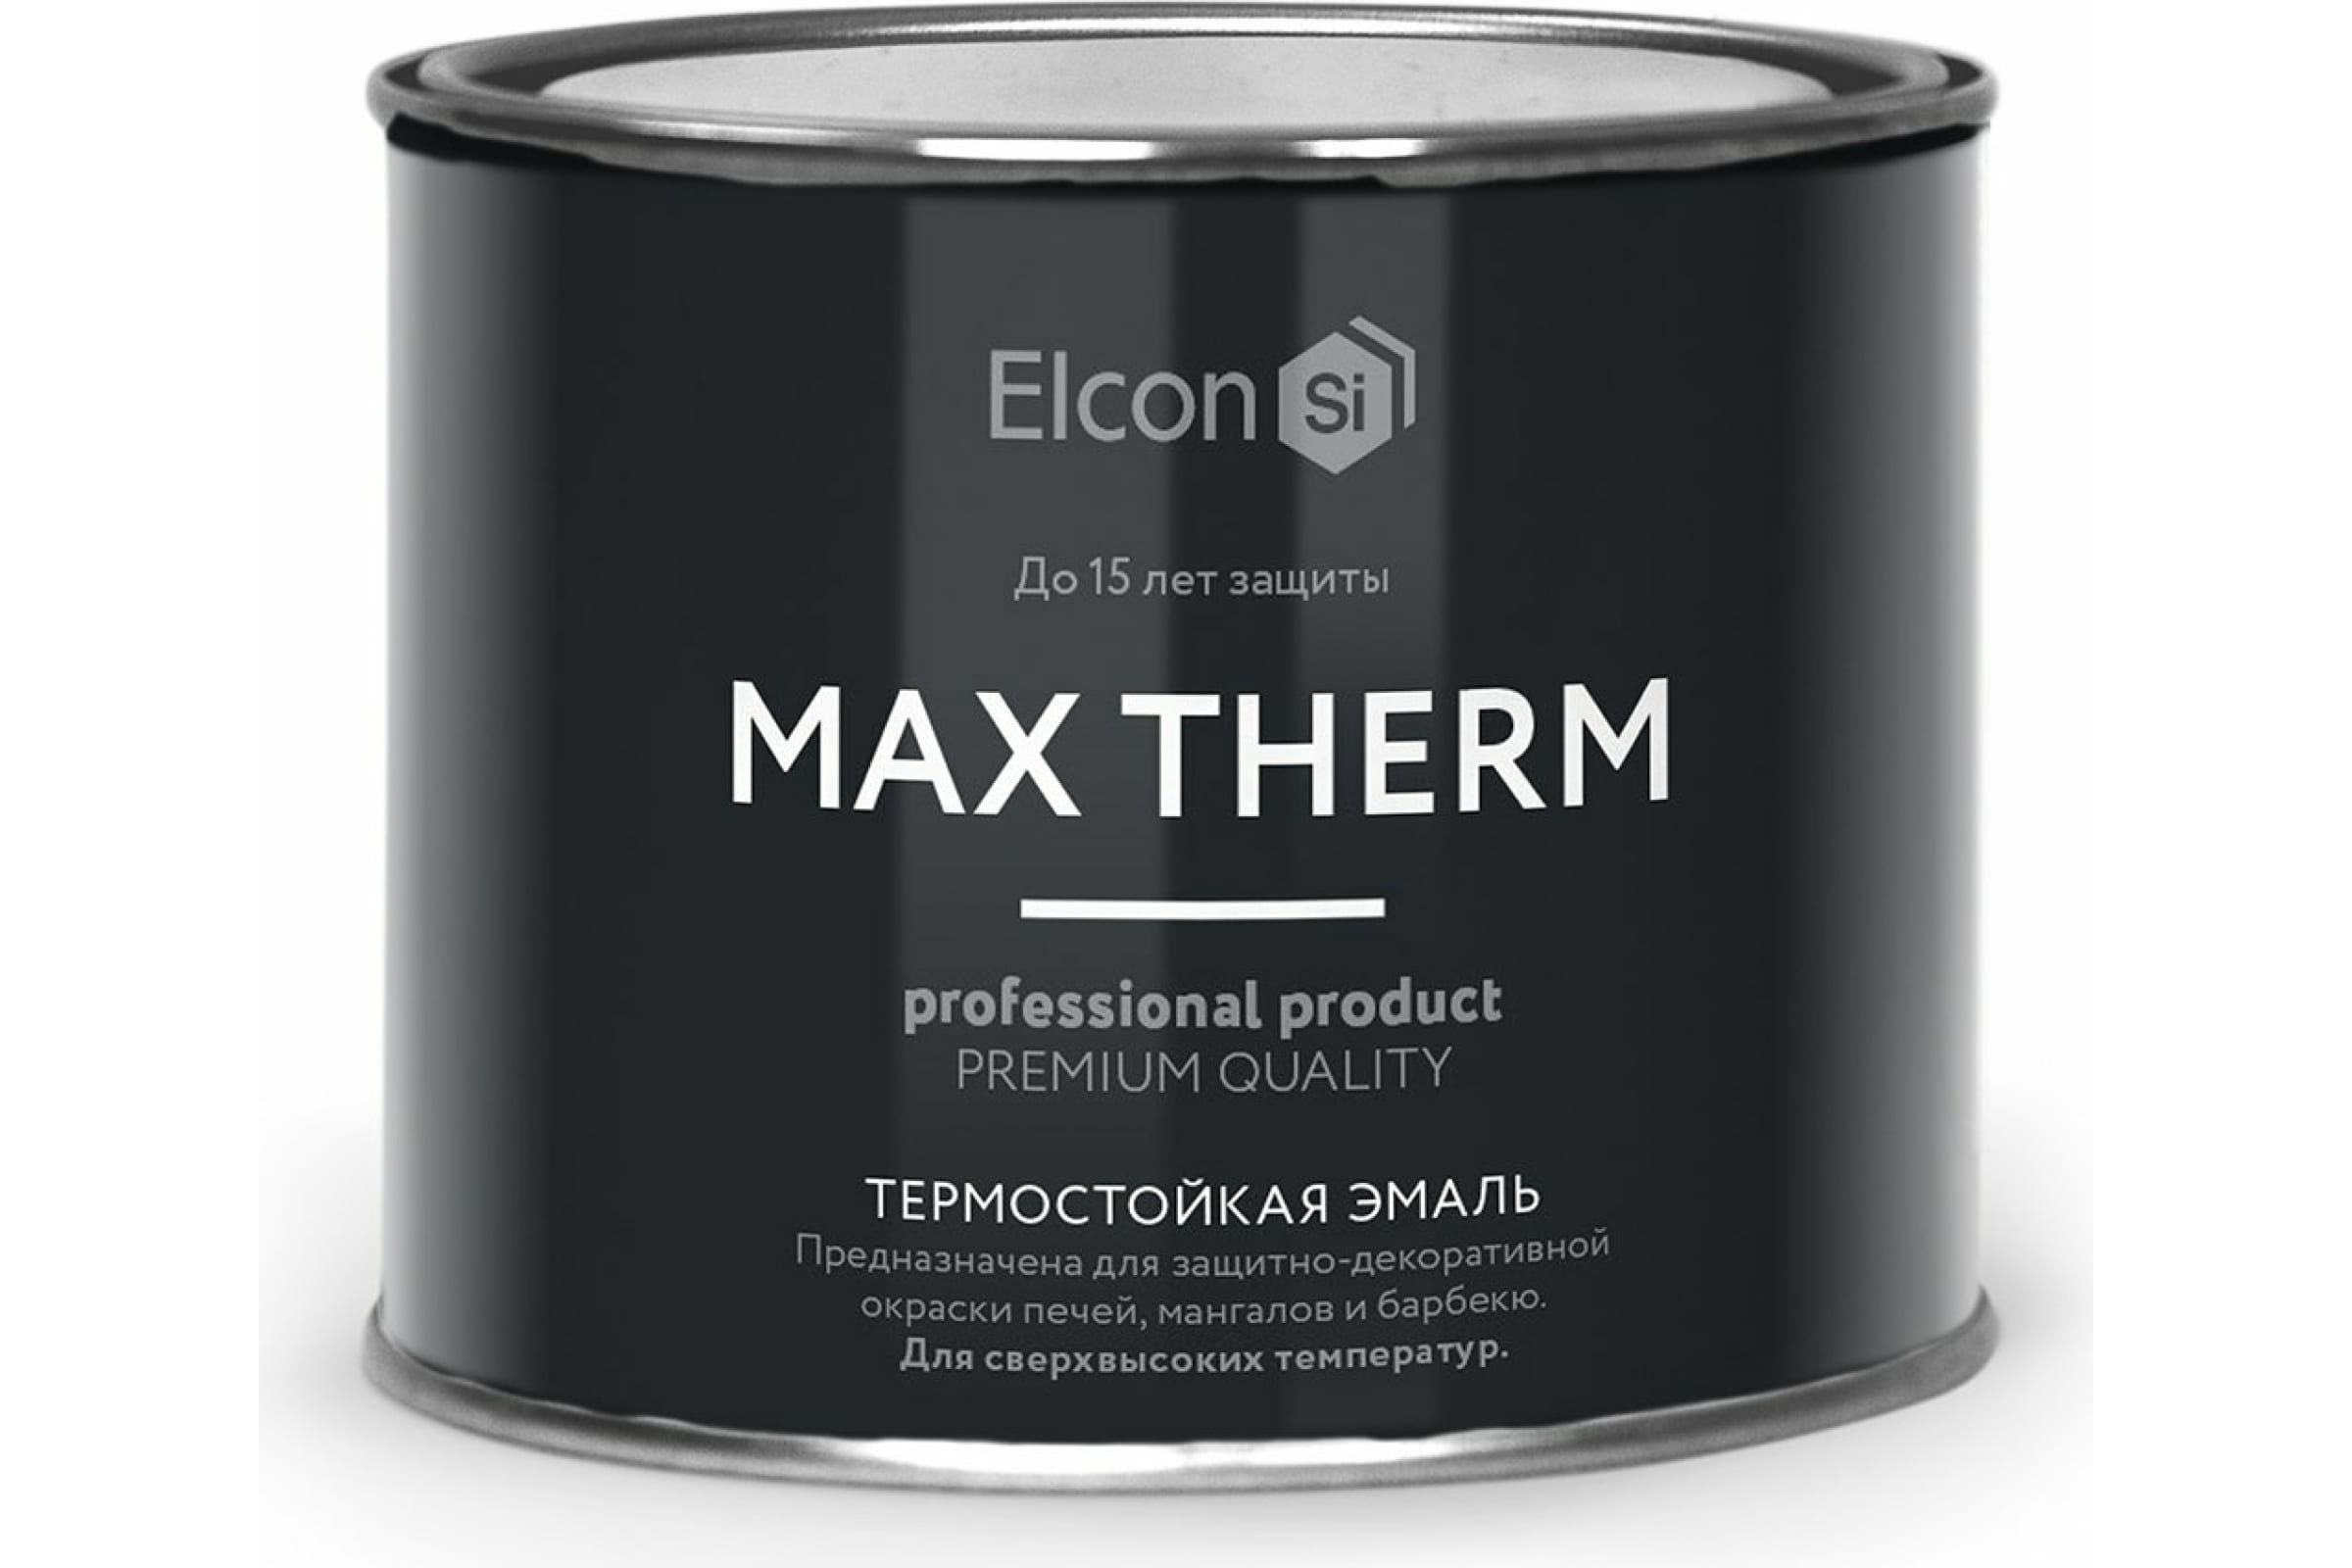 Термостойкая антикоррозионная эмаль Elcon Max Therm до 400 градусов, 0,4 л, ярко-красная термостойкая антикоррозионная эмаль elcon max therm до 400 градусов 0 4 л ярко красная